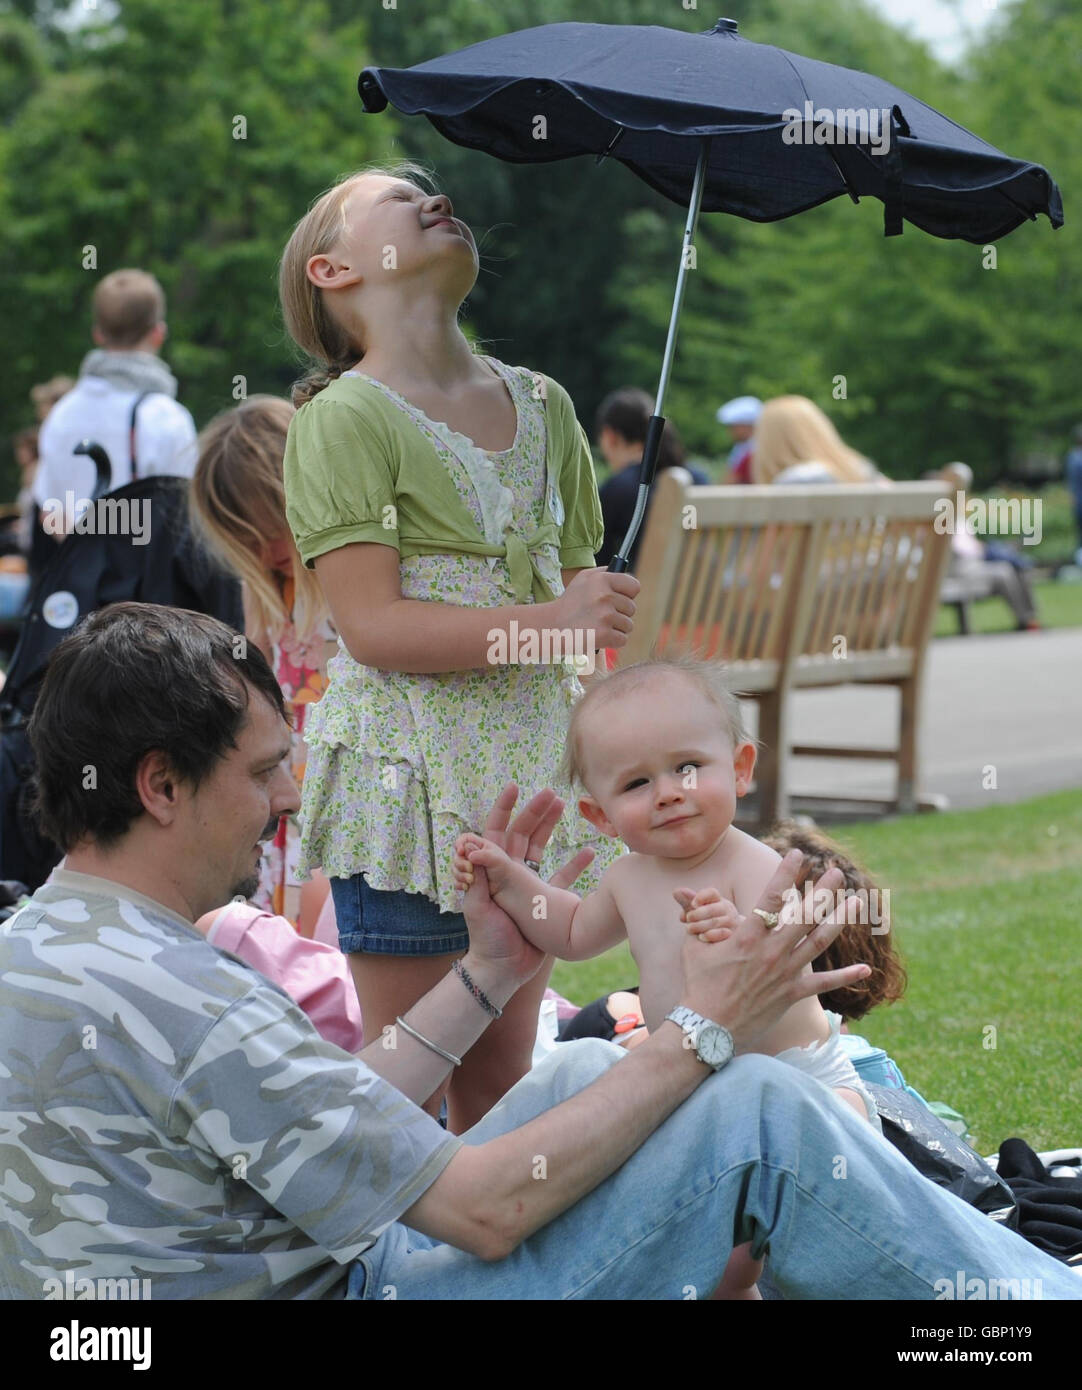 Mitglieder der Öffentlichkeit genießen heute die Sonne im Londoner Regent's Park, wo sie an einem Weltrekord-Picknick im Rahmen der ersten National Family Week Großbritanniens teilgenommen haben. Stockfoto